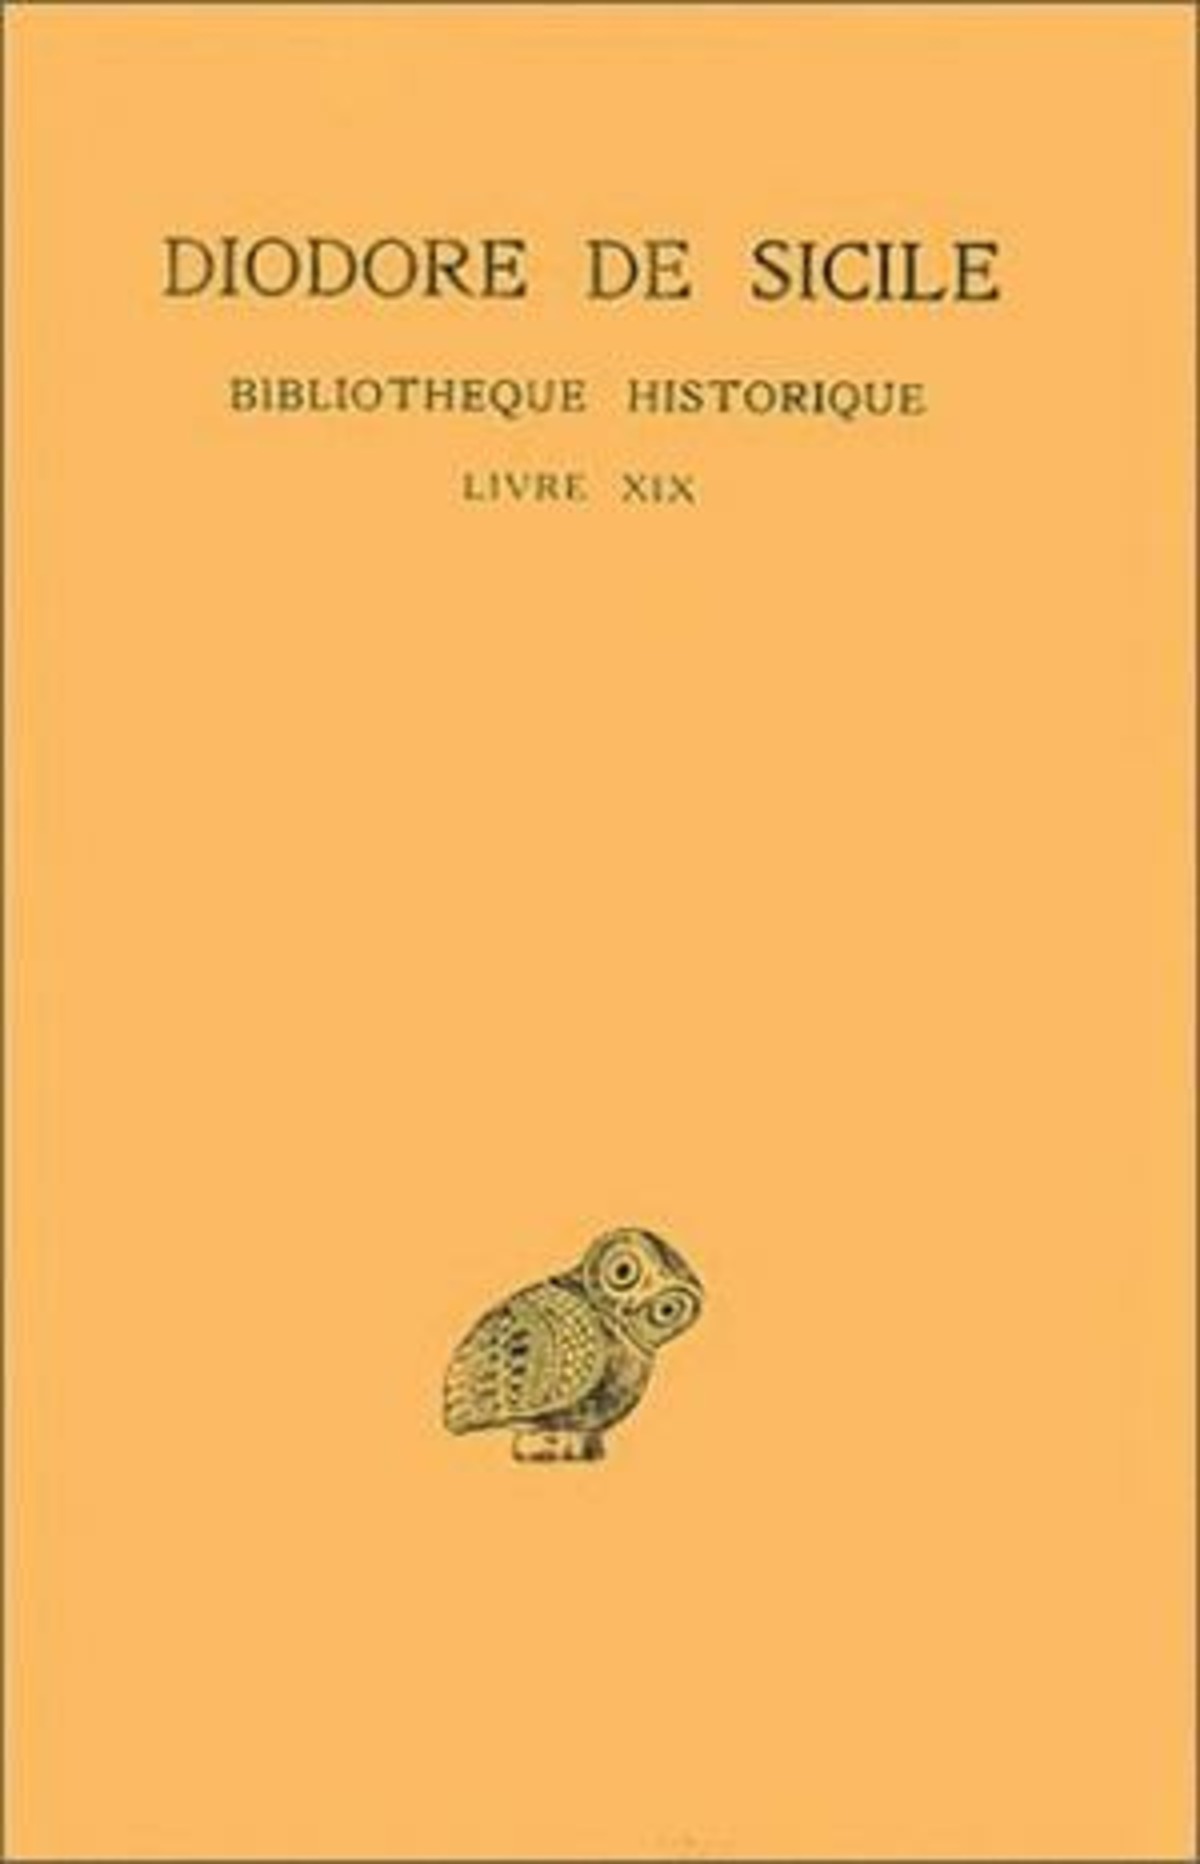 Bibliothèque historique. Tome XIV : Livre XIX